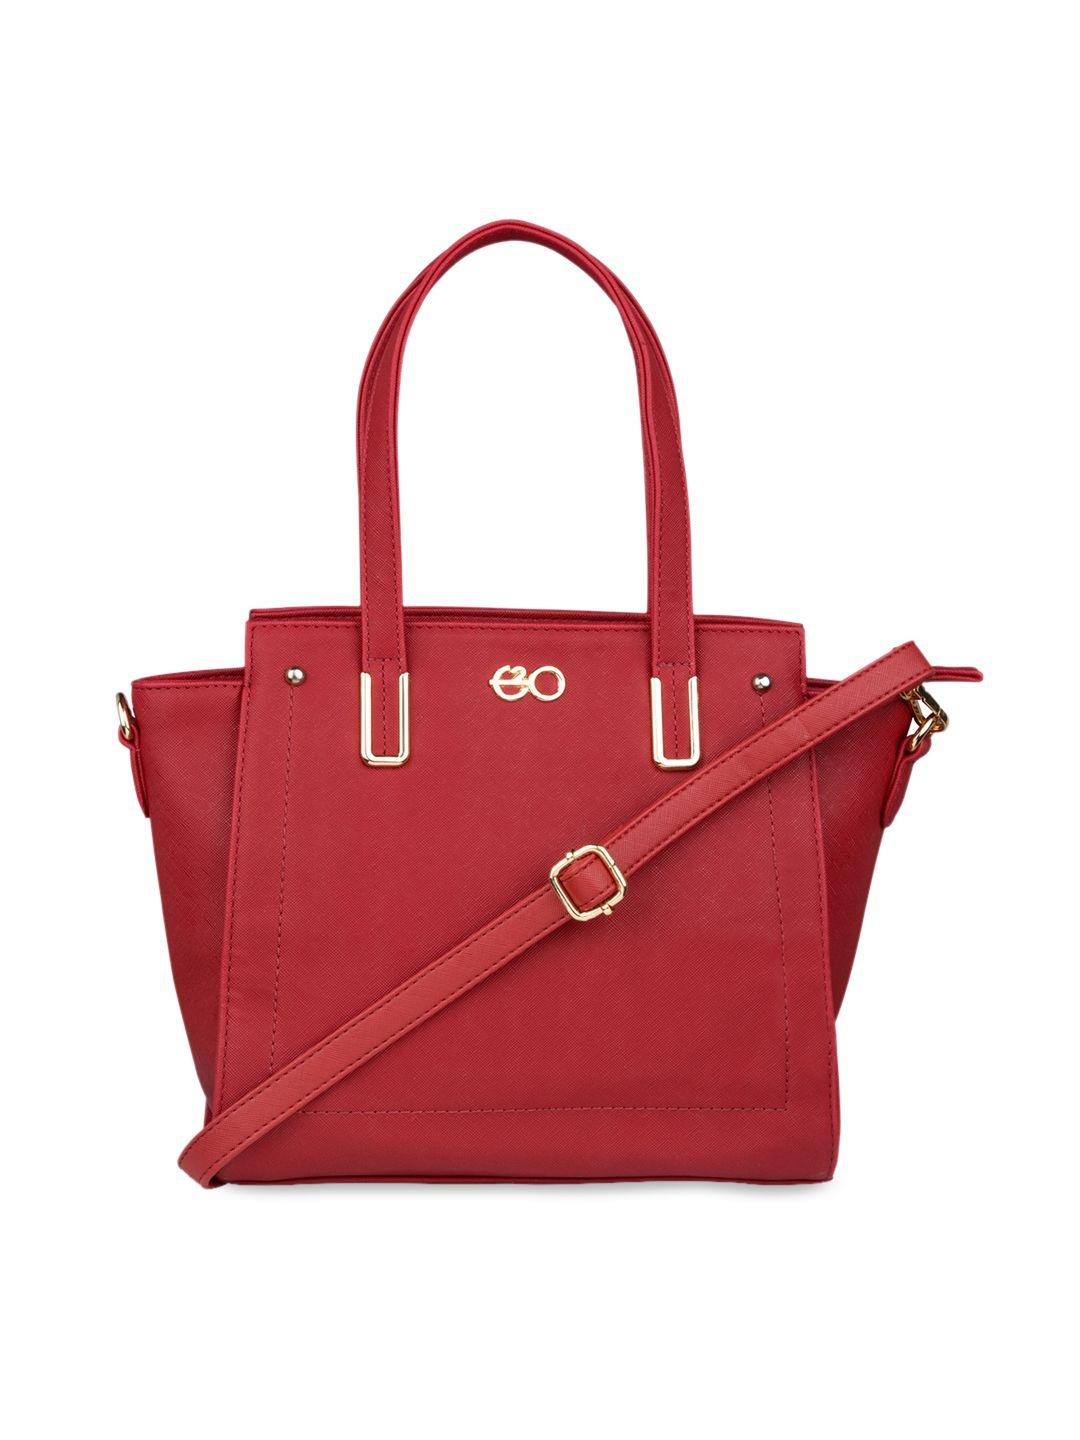 e2o women red structured shoulder bag